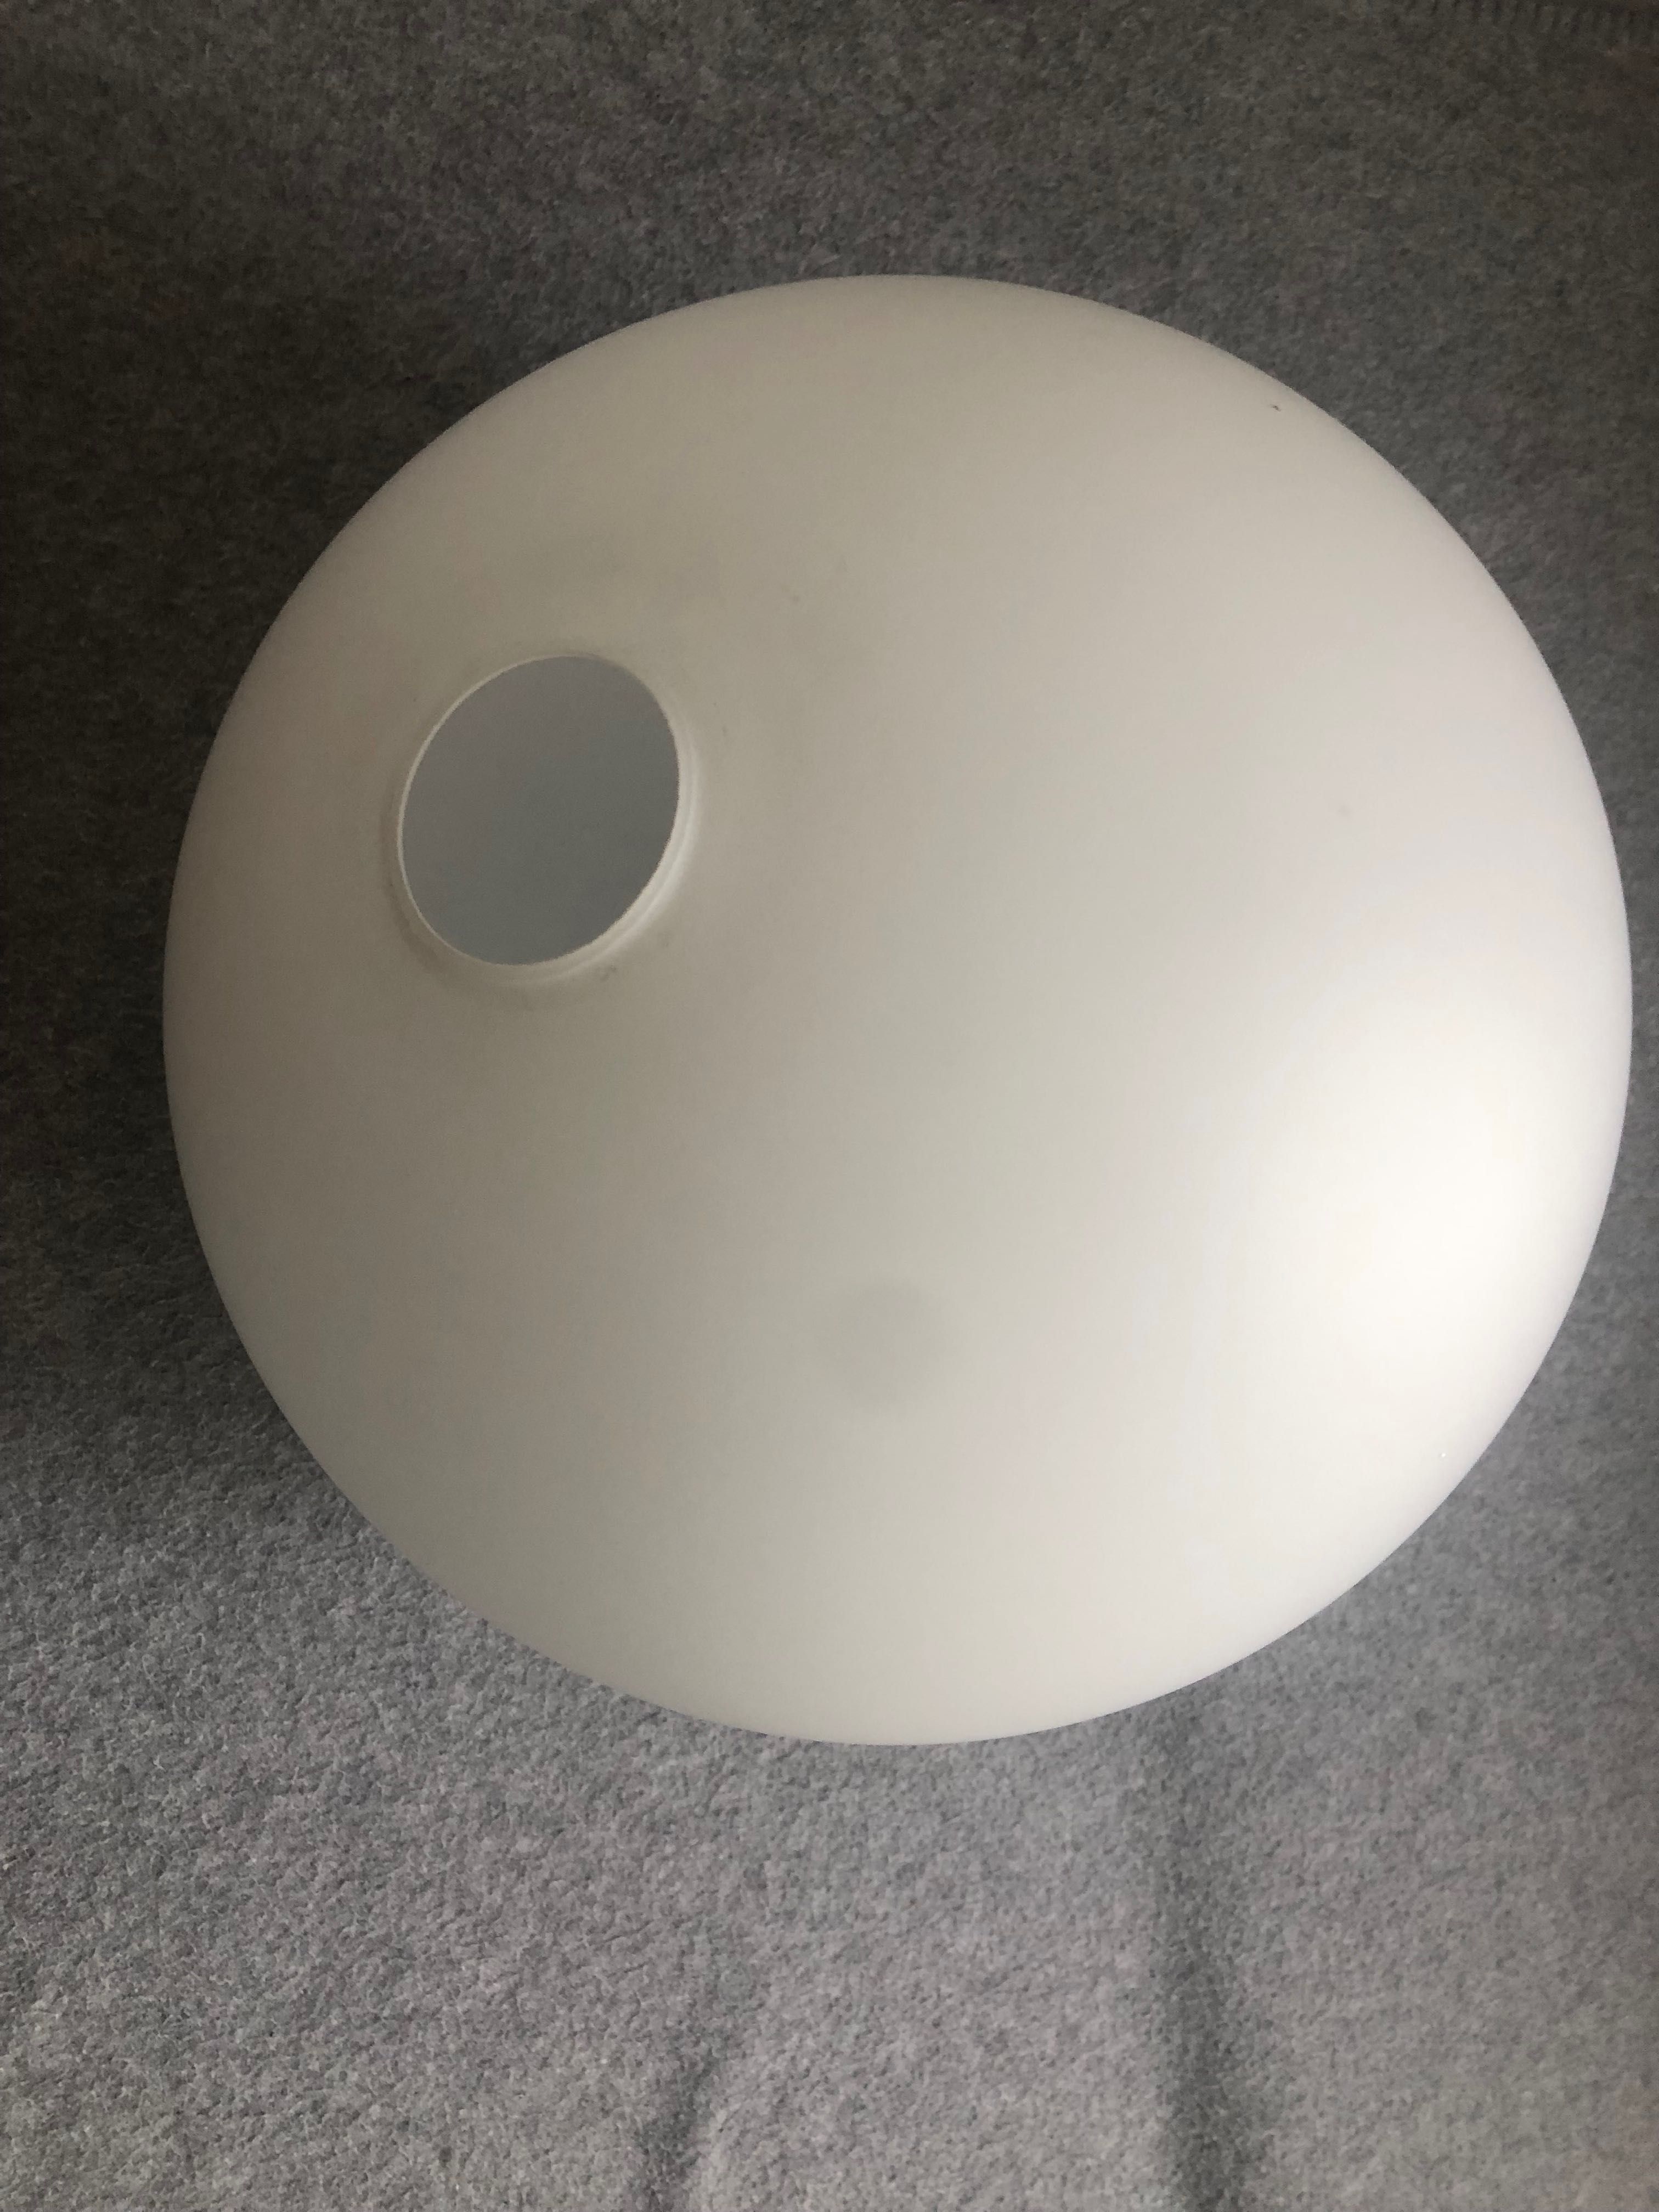 LAMPA duża biała kula klasyczna śr. 35 cm wysokość do regulacji